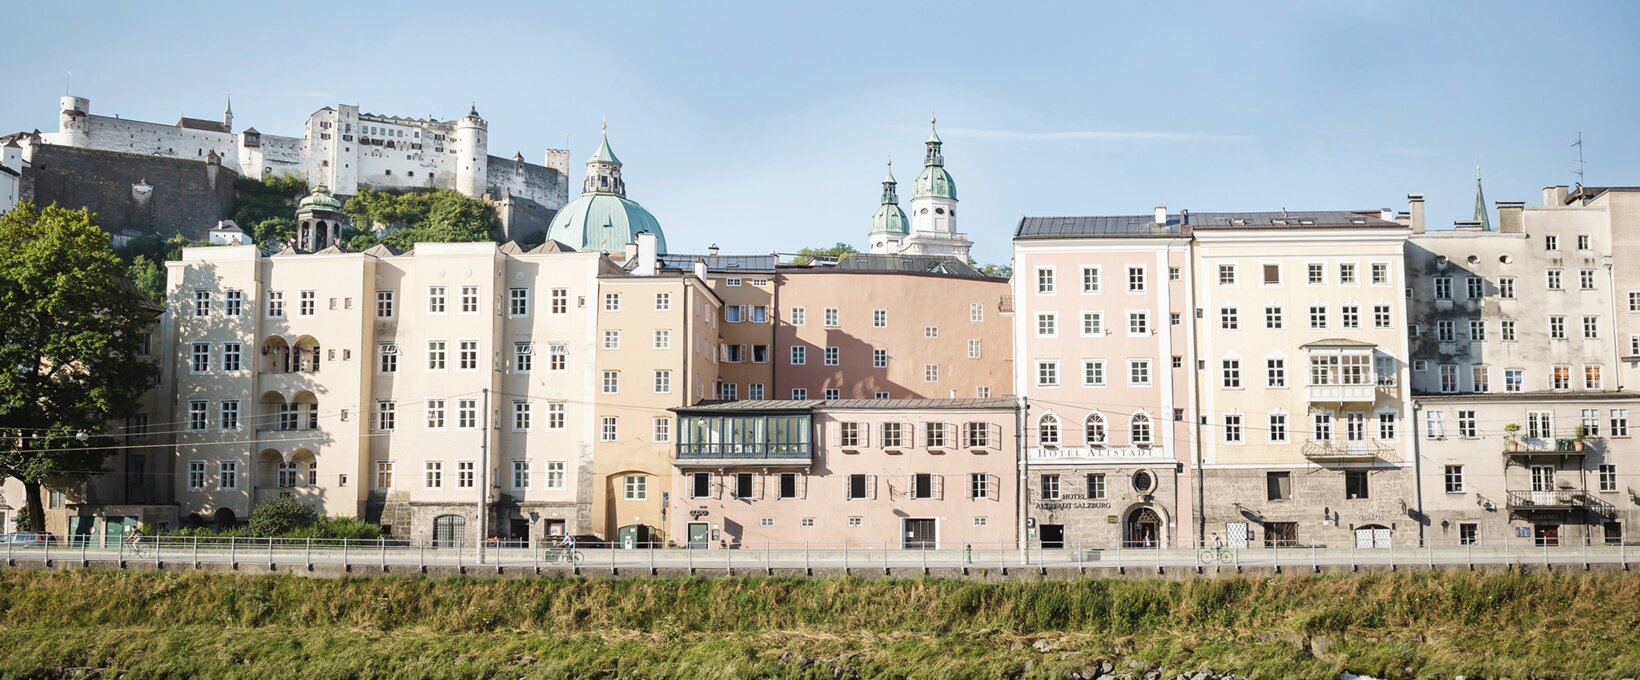 Rudolfskai view | Hotel Altstadt Salzburg